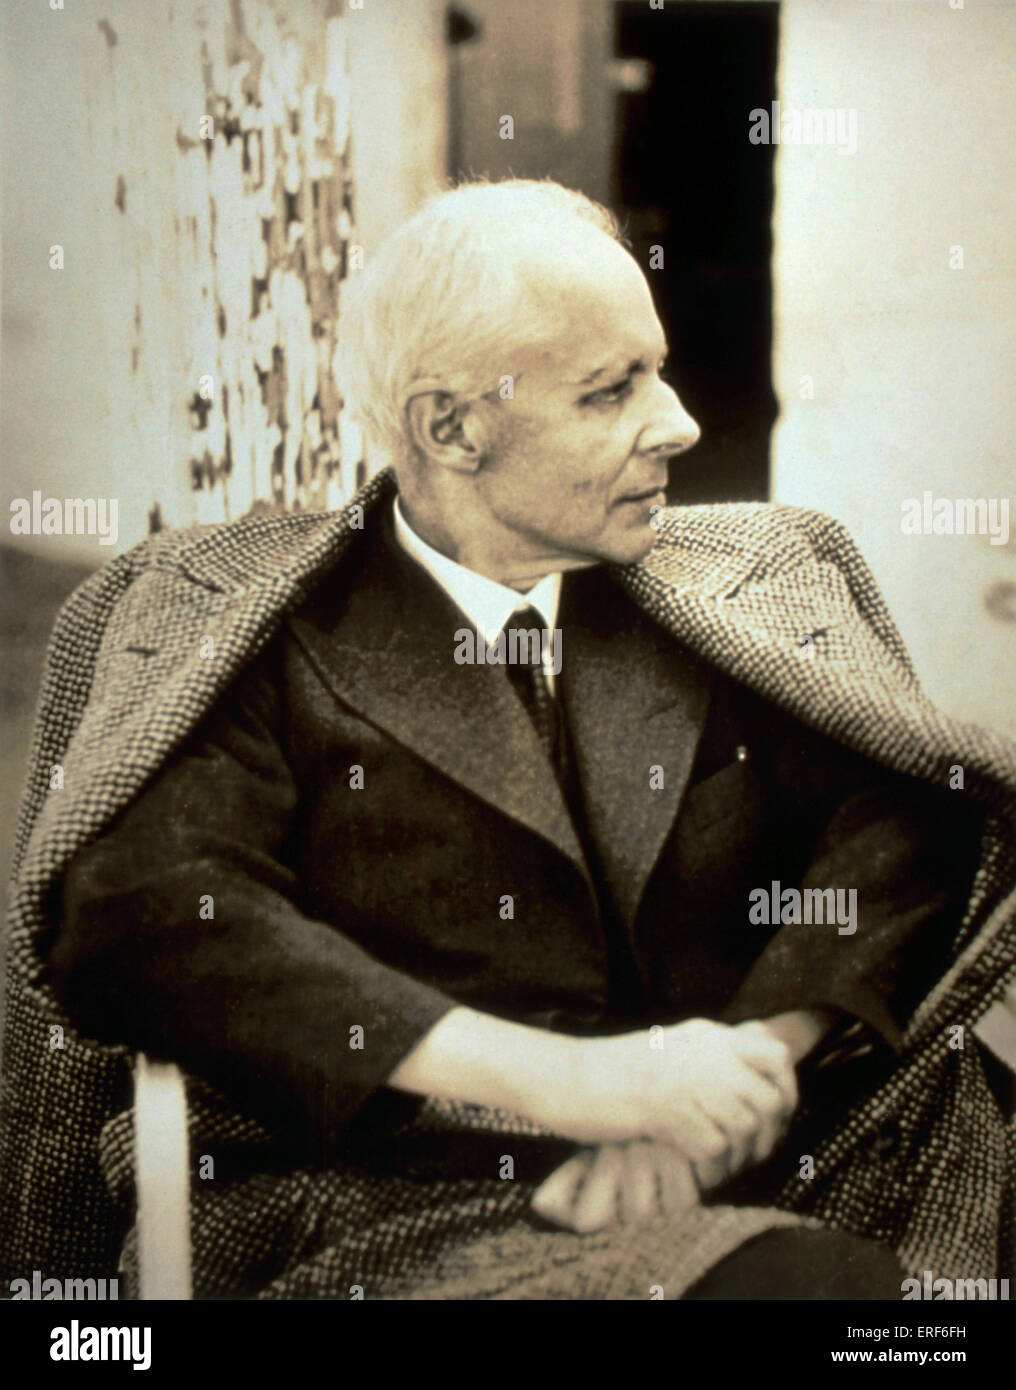 Bela Bartok, ritratto. Ungherese compositore e pianista, 1881-1945 Foto Stock